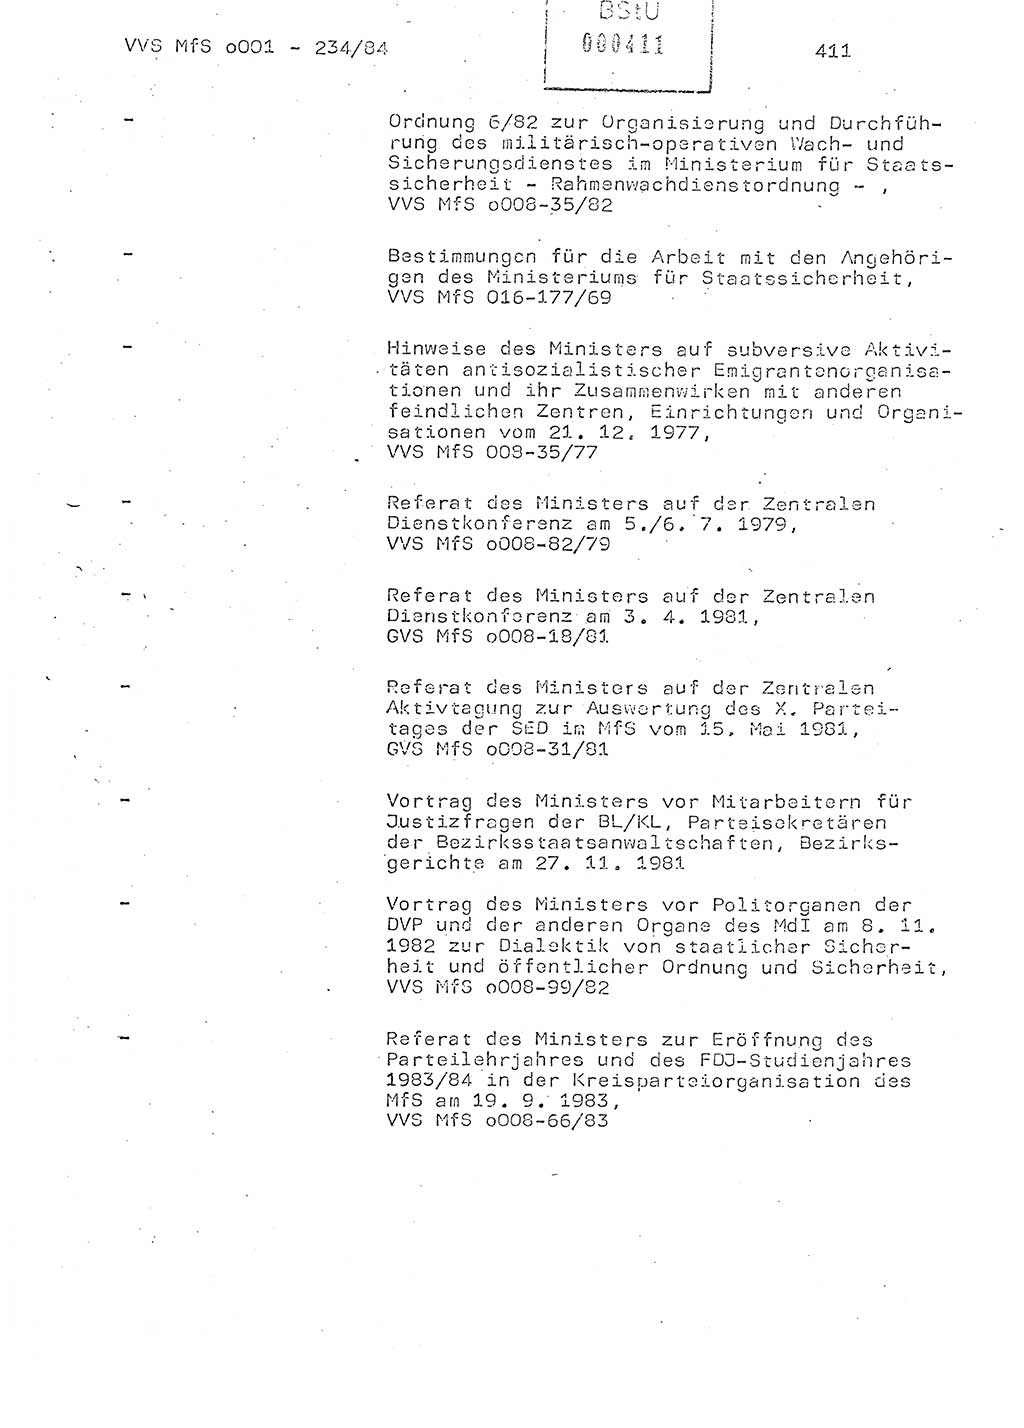 Dissertation Oberst Siegfried Rataizick (Abt. ⅩⅣ), Oberstleutnant Volkmar Heinz (Abt. ⅩⅣ), Oberstleutnant Werner Stein (HA Ⅸ), Hauptmann Heinz Conrad (JHS), Ministerium für Staatssicherheit (MfS) [Deutsche Demokratische Republik (DDR)], Juristische Hochschule (JHS), Vertrauliche Verschlußsache (VVS) o001-234/84, Potsdam 1984, Seite 411 (Diss. MfS DDR JHS VVS o001-234/84 1984, S. 411)